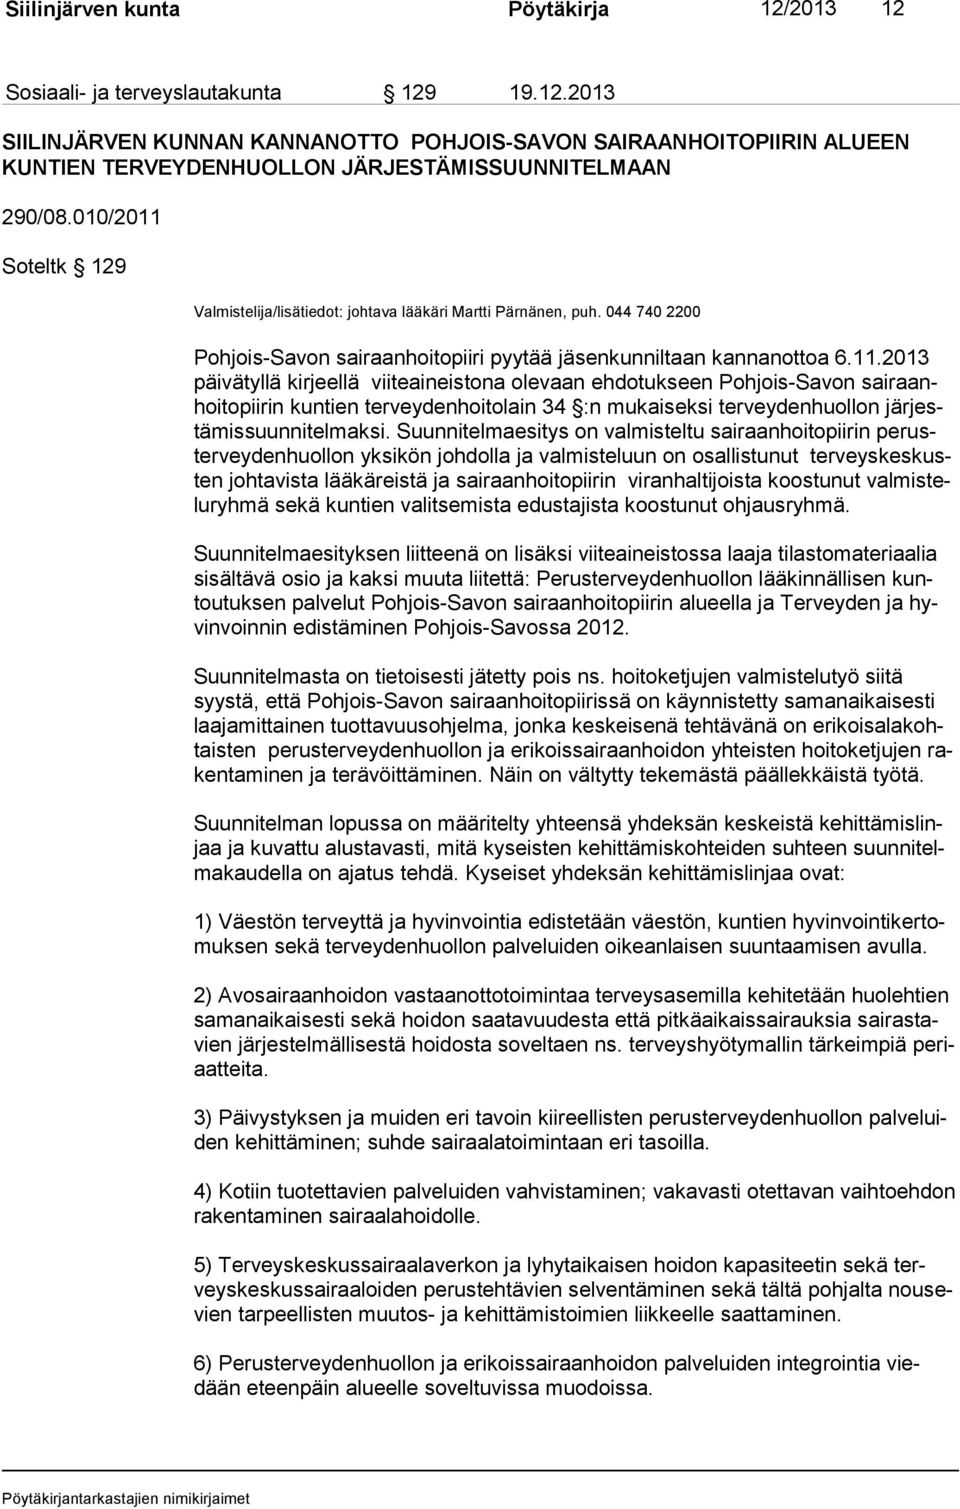 Soteltk 129 Valmistelija/lisätiedot: johtava lääkäri Martti Pärnänen, puh. 044 740 2200 Pohjois-Savon sairaanhoitopiiri pyytää jäsenkunniltaan kannanottoa 6.11.